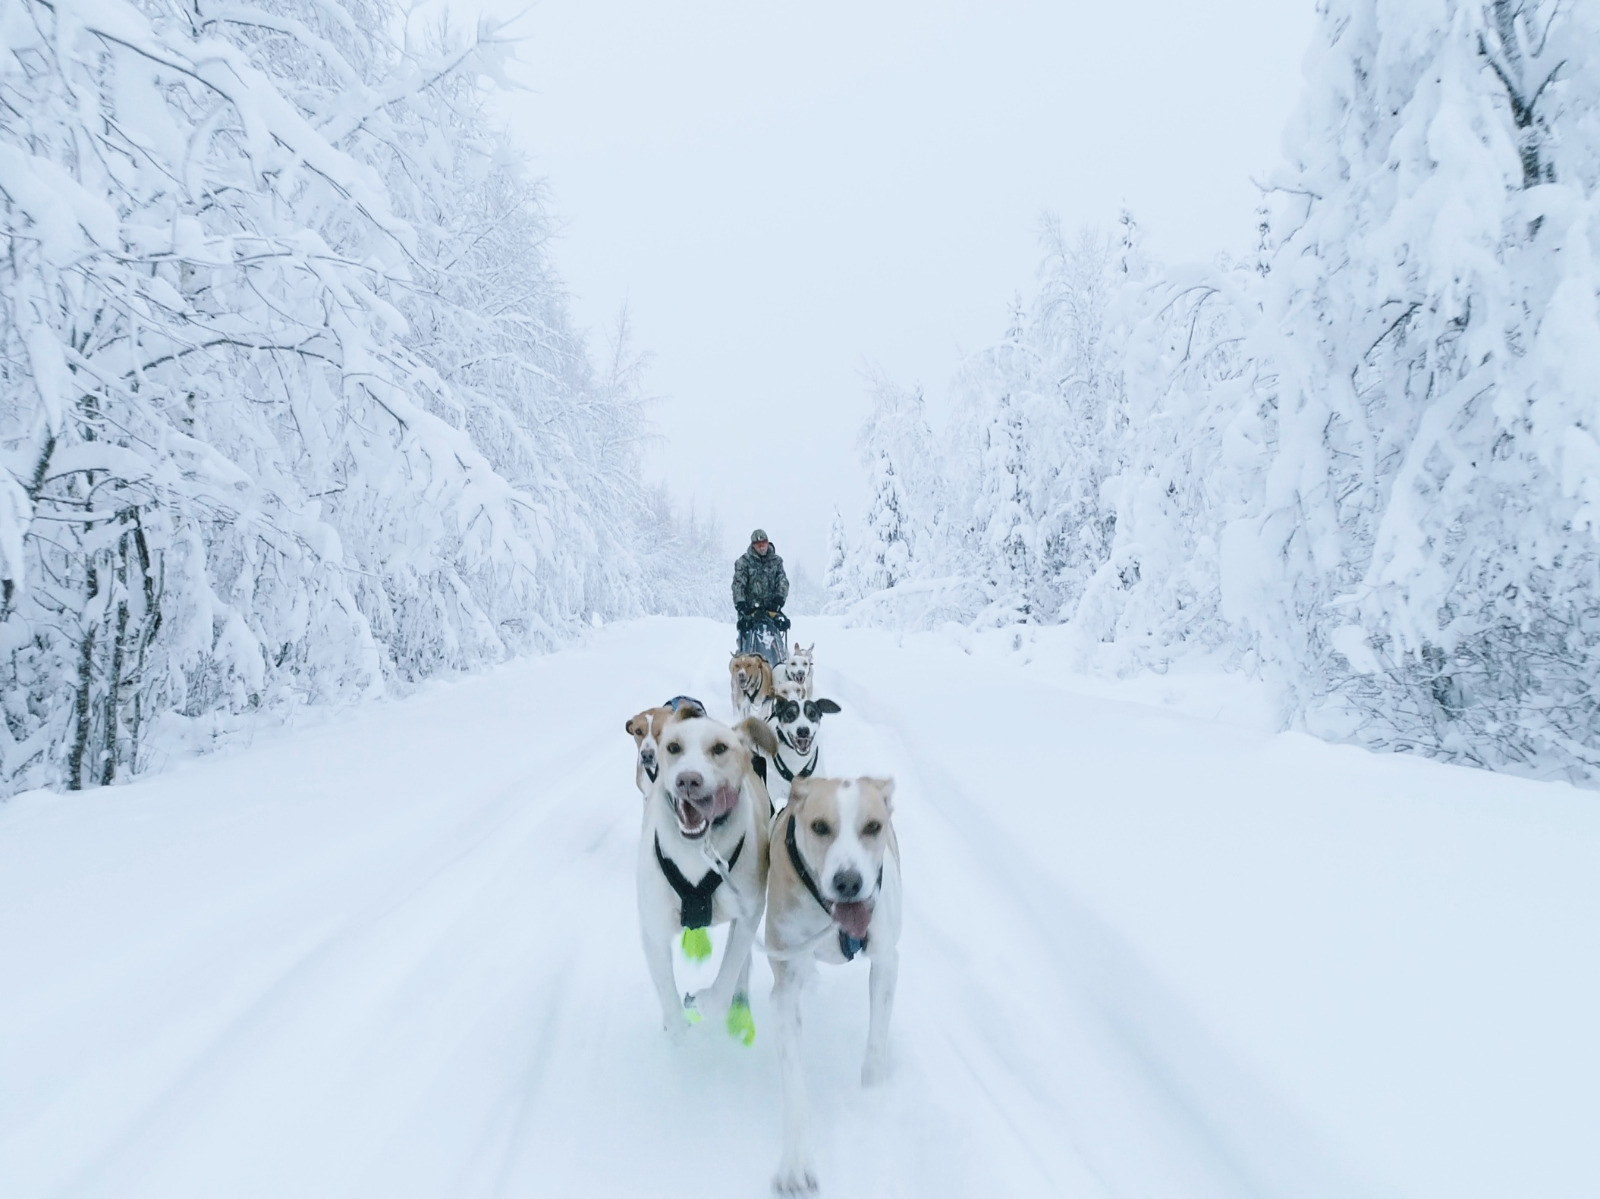 Aurélie en pleine sortie conduite d'attelage lors d'un séjour chien de traîneau en Suède.